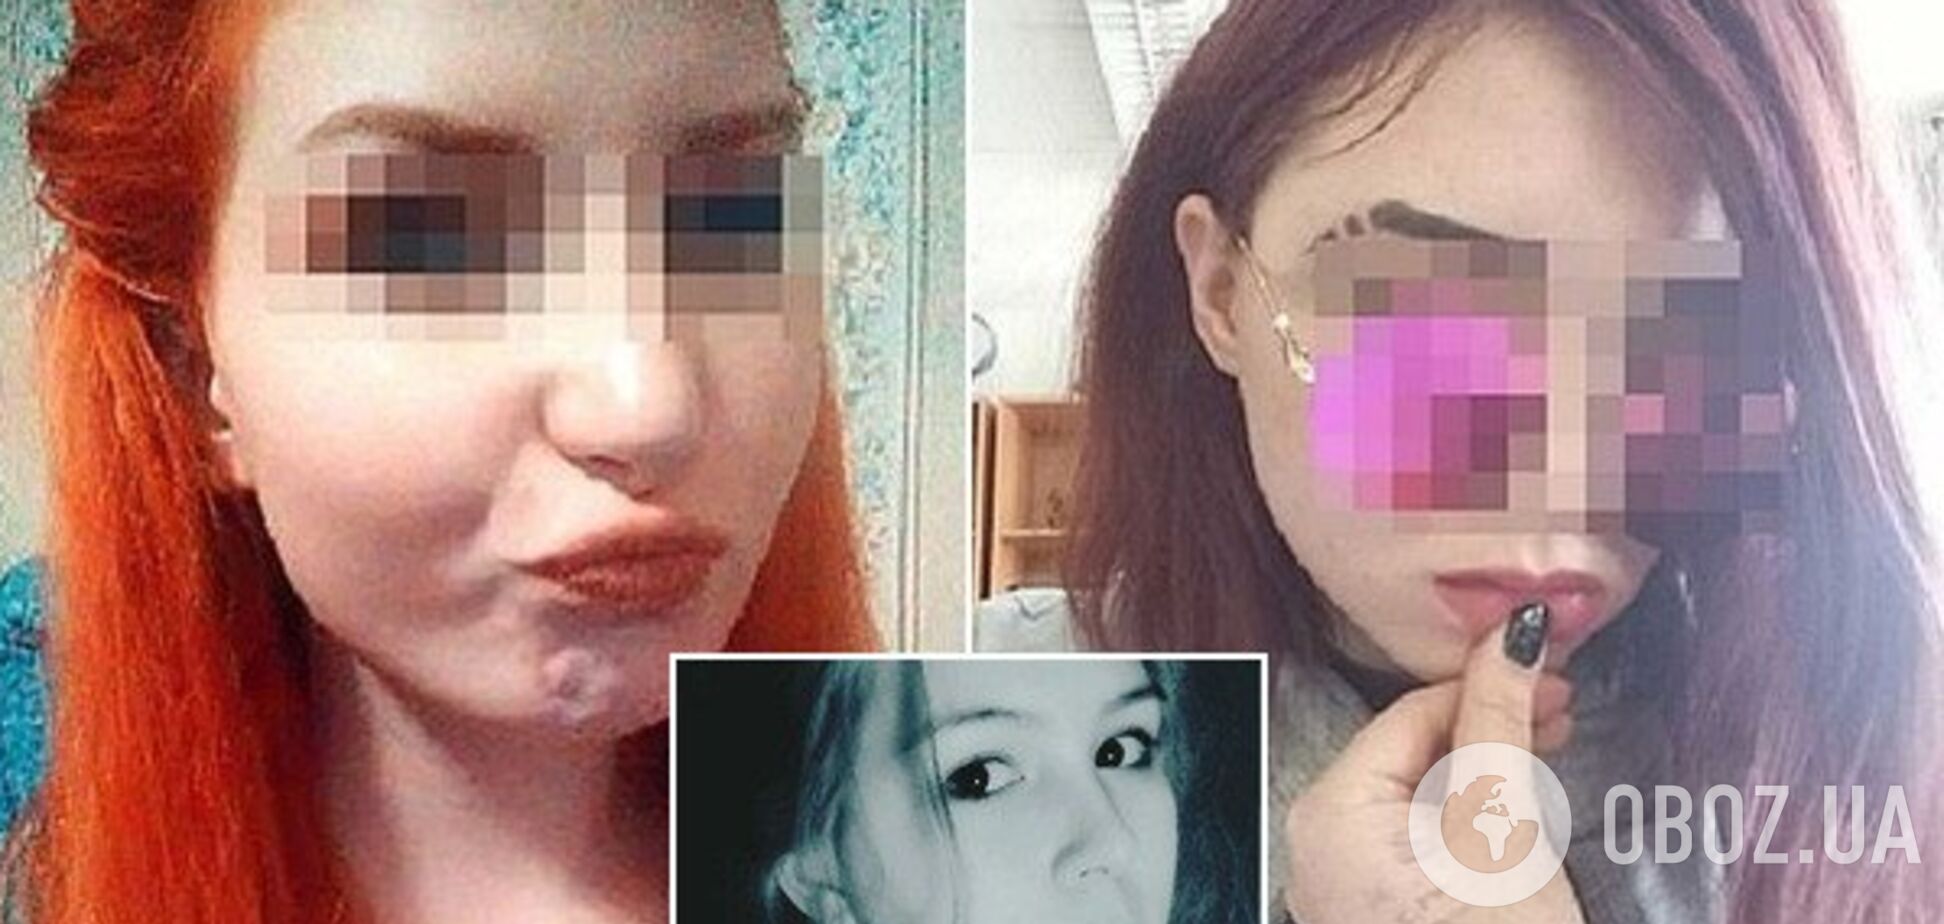 'Була надто красивою': спливли подробиці звірячого вбивства дівчини подругами в Росії